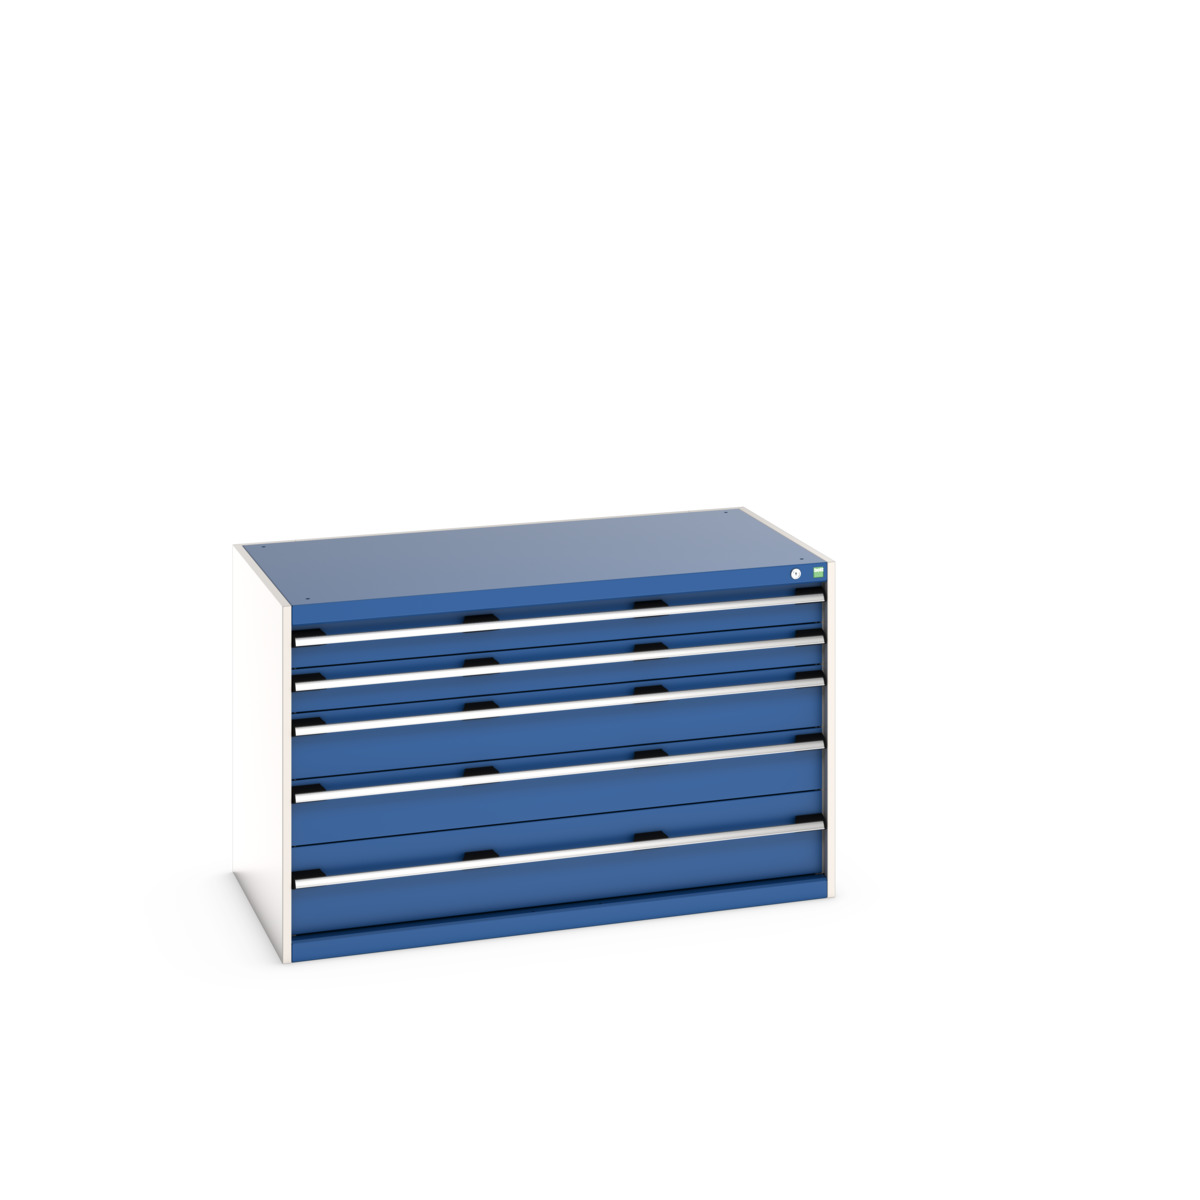 40030007.11V - cubio drawer cabinet